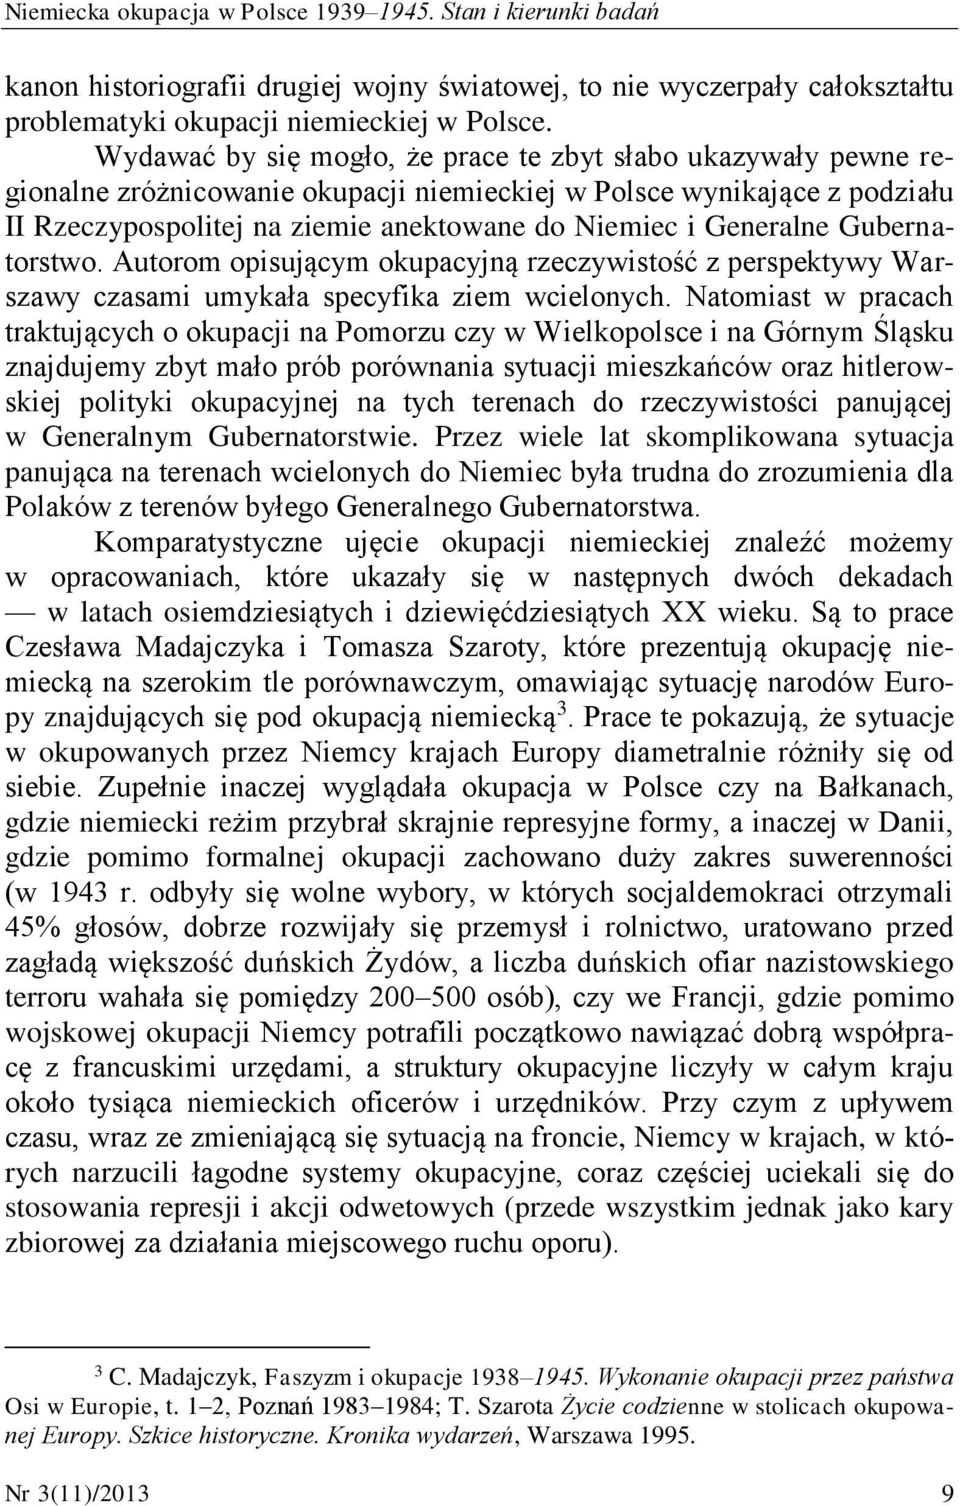 Generalne Gubernatorstwo. Autorom opisującym okupacyjną rzeczywistość z perspektywy Warszawy czasami umykała specyfika ziem wcielonych.